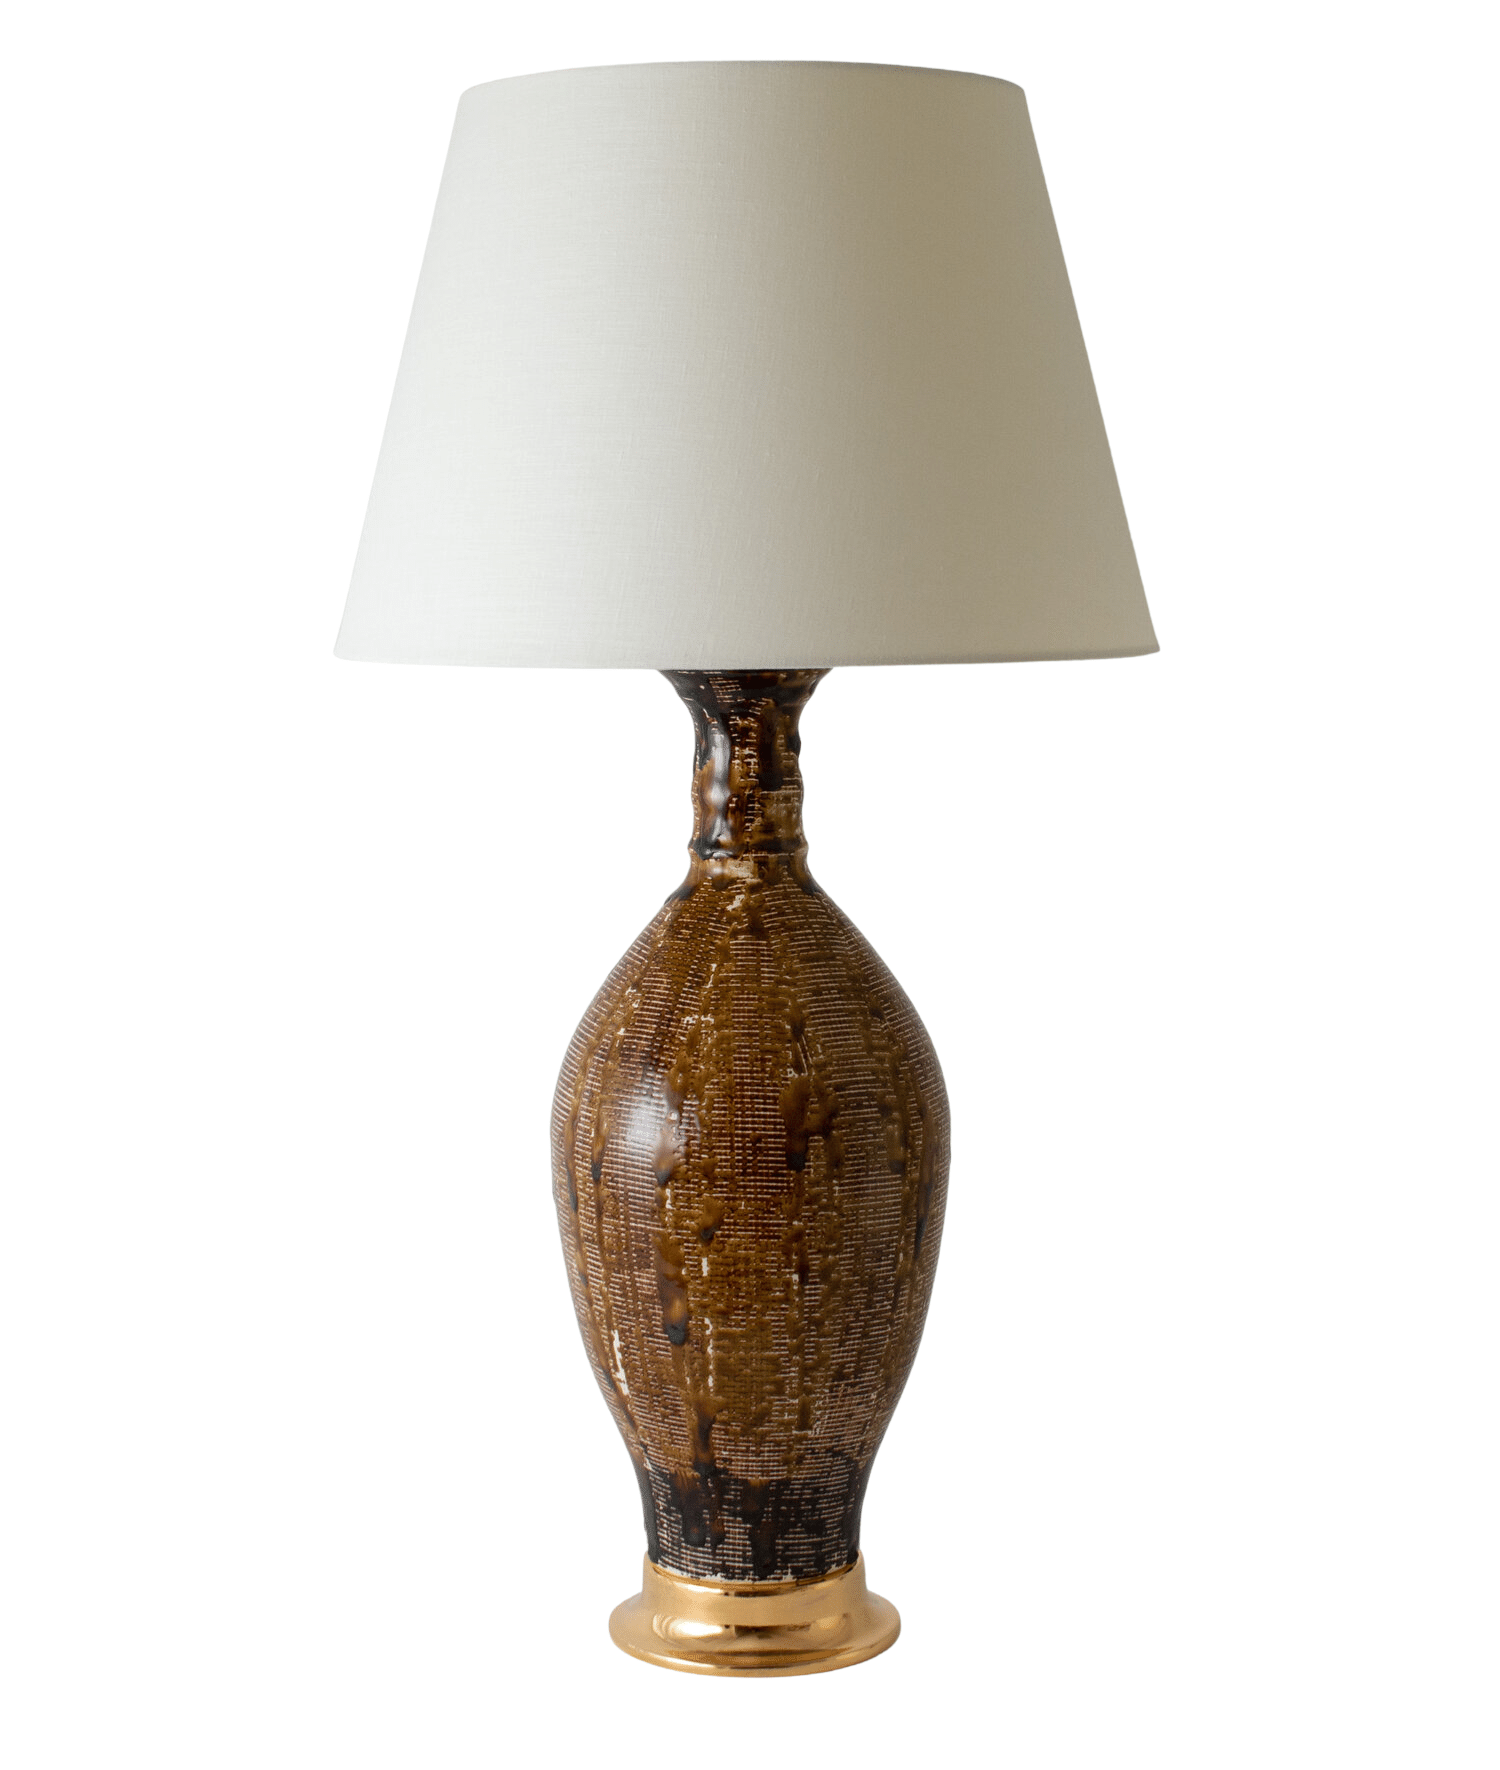 Paul Schneider "Alpine" Lamp